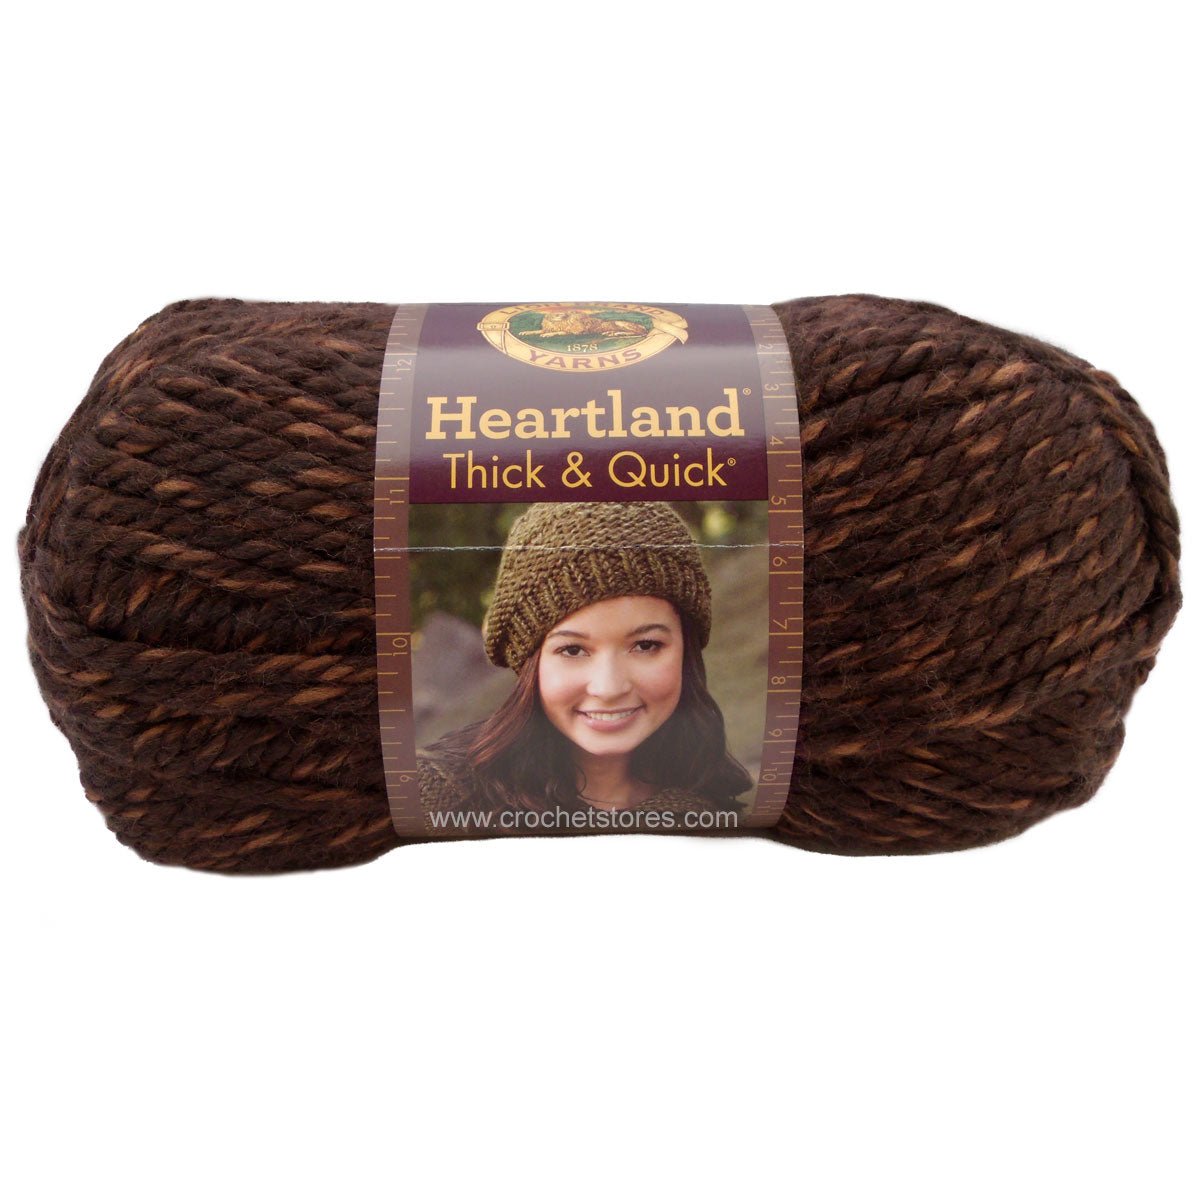 HEARTLAND T&Q - Crochetstores137-126